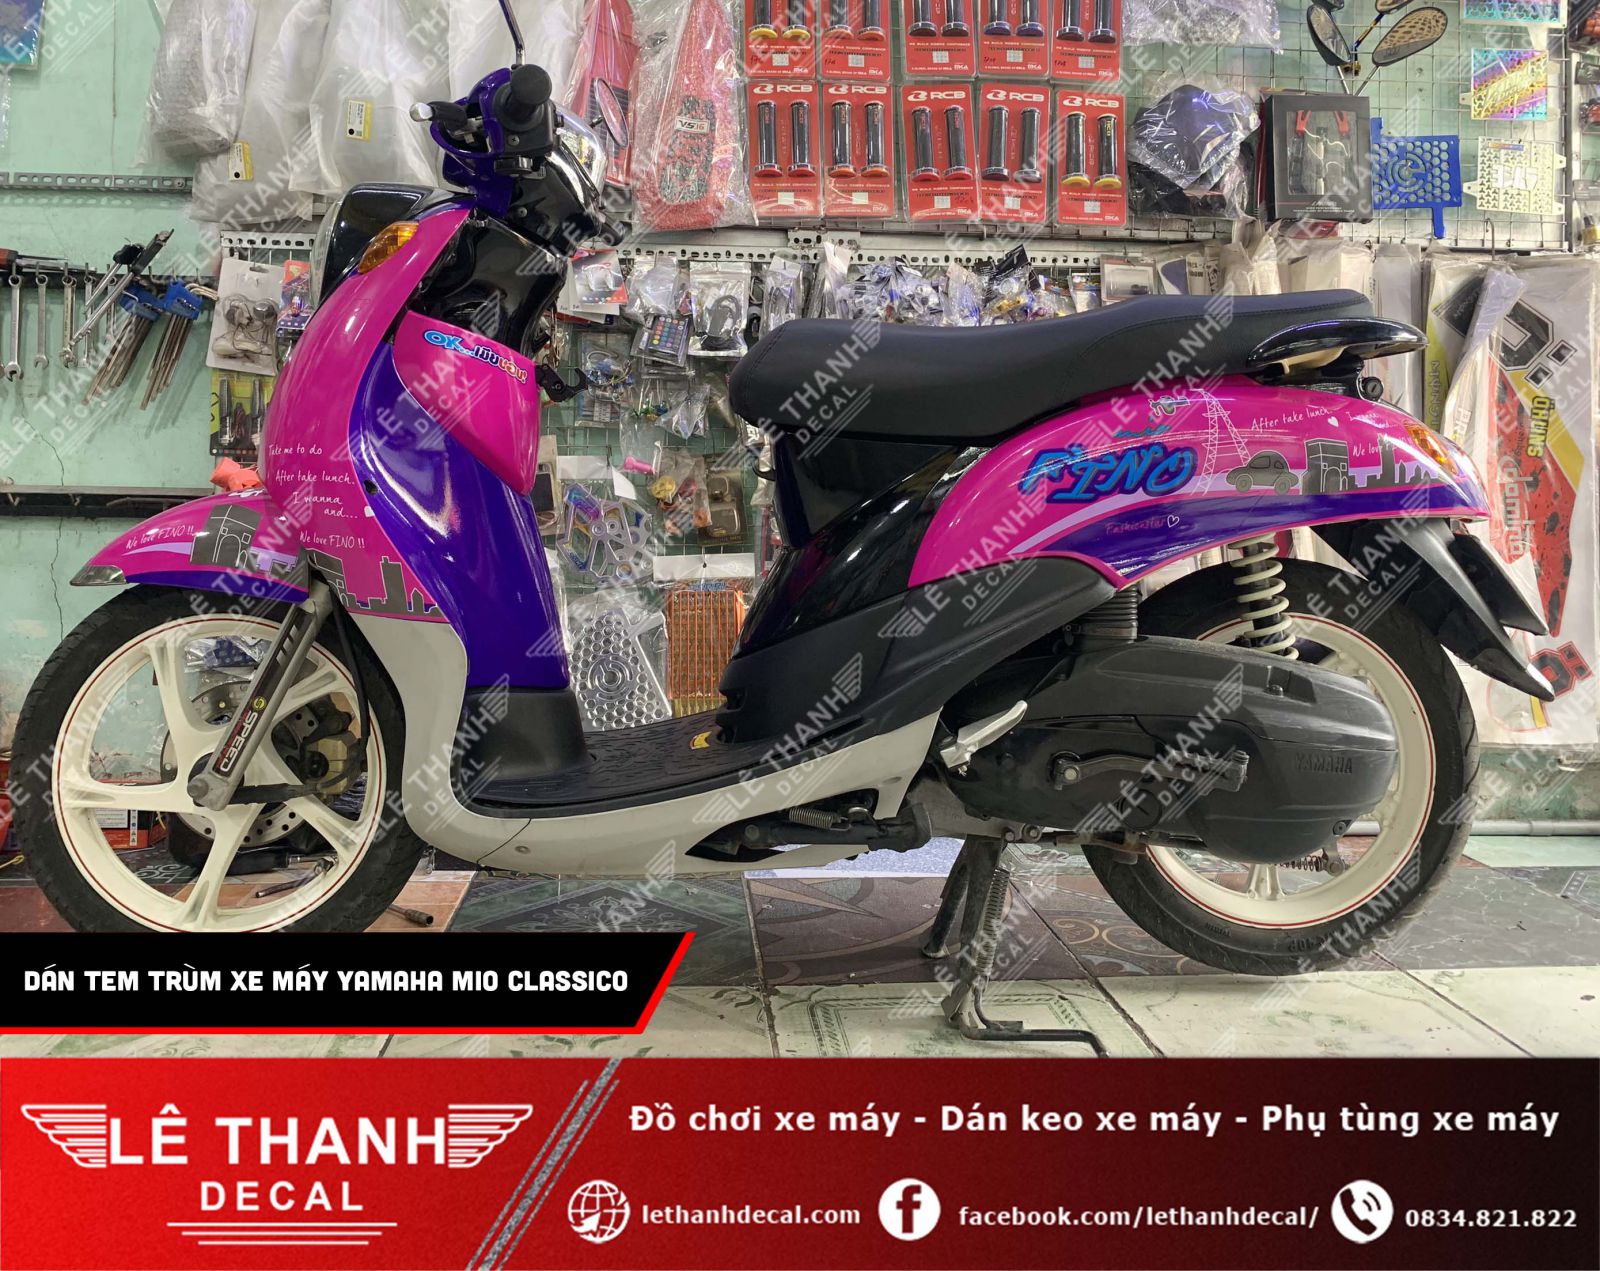 [TOP] 10+ tiệm dán decal xe máy tại quận Tân Bình uy tín, chất lượng 2023